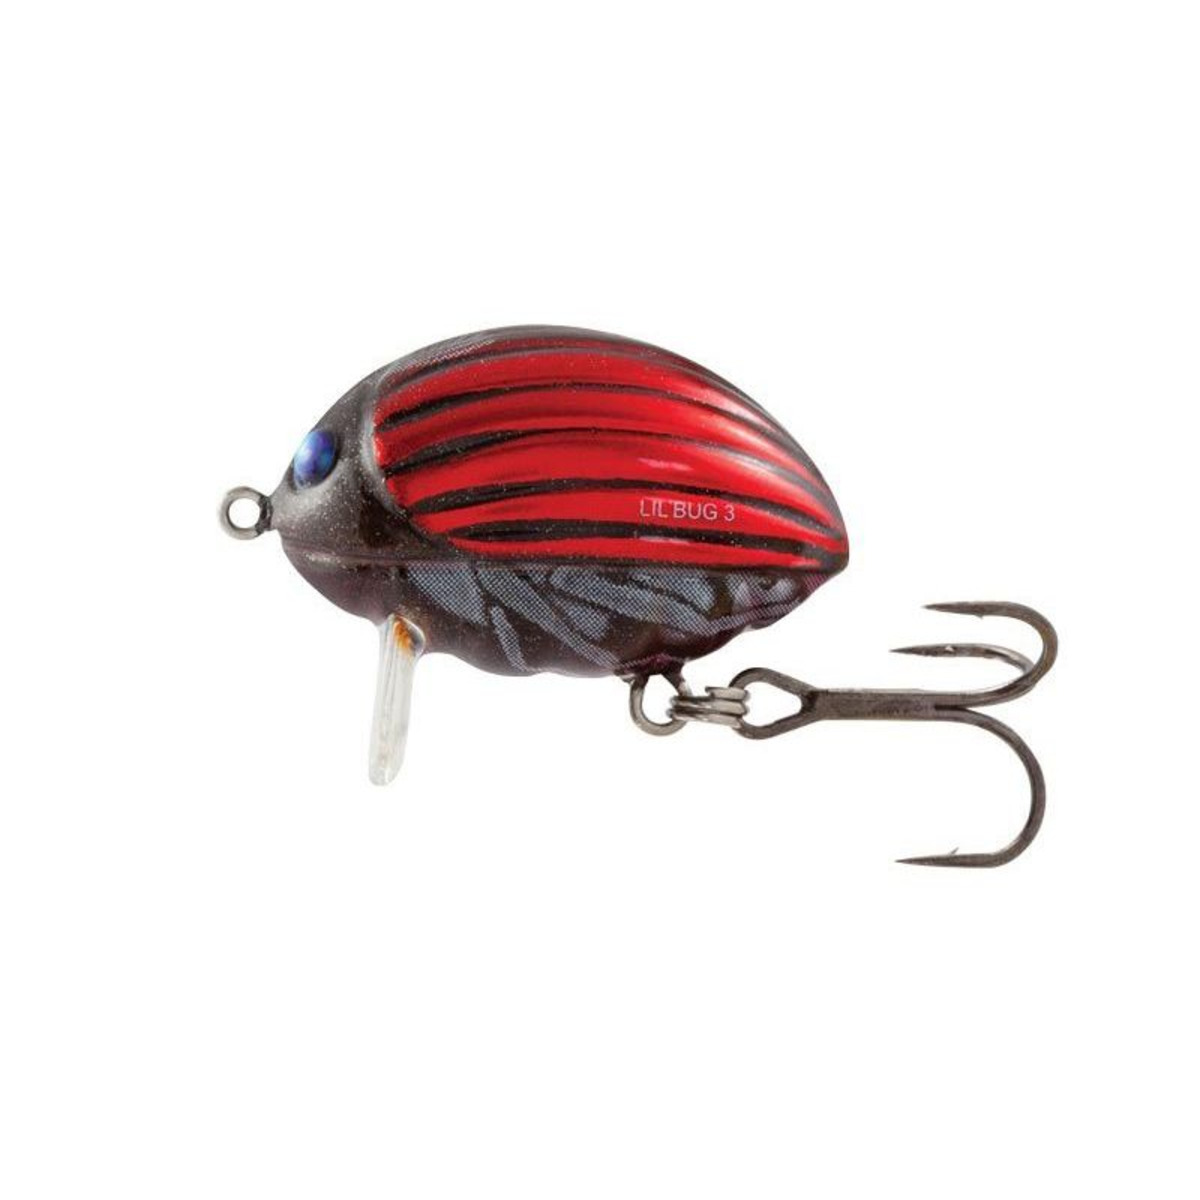 Salmo Lil Bug - 3 cm-4.3 g - Ladybird 